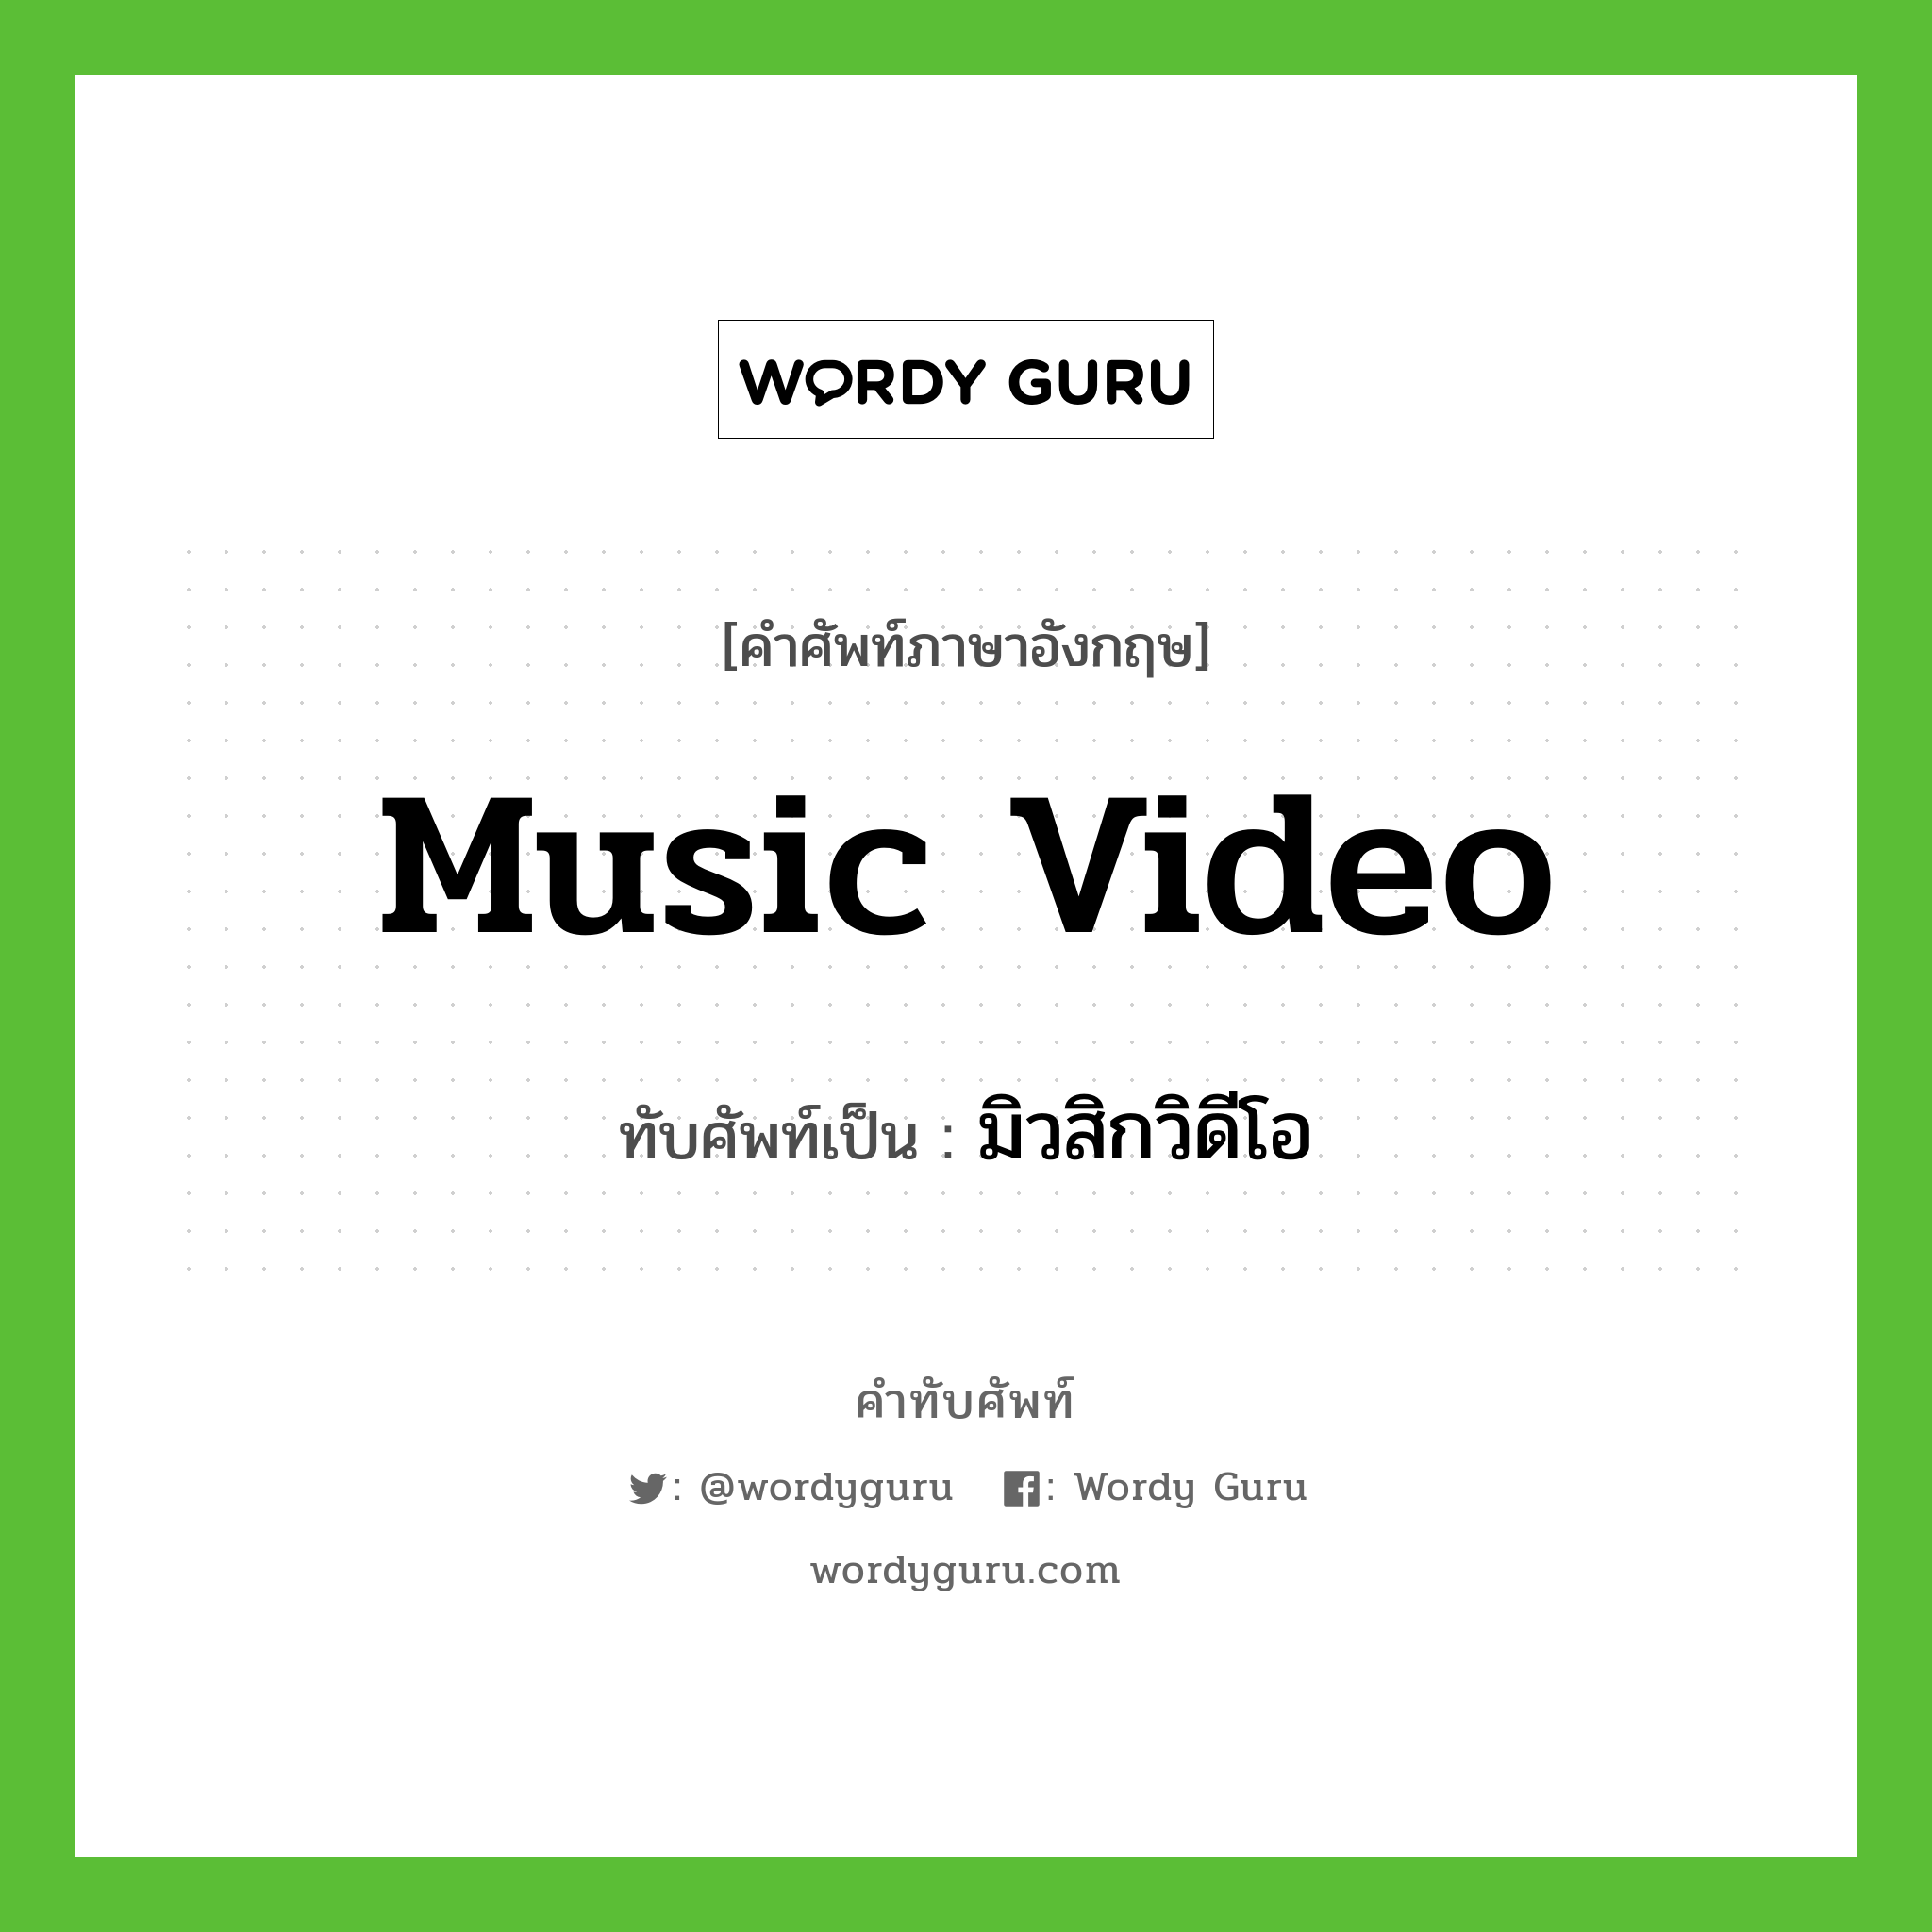 music video เขียนเป็นคำไทยว่าอะไร?, คำศัพท์ภาษาอังกฤษ music video ทับศัพท์เป็น มิวสิกวิดีโอ